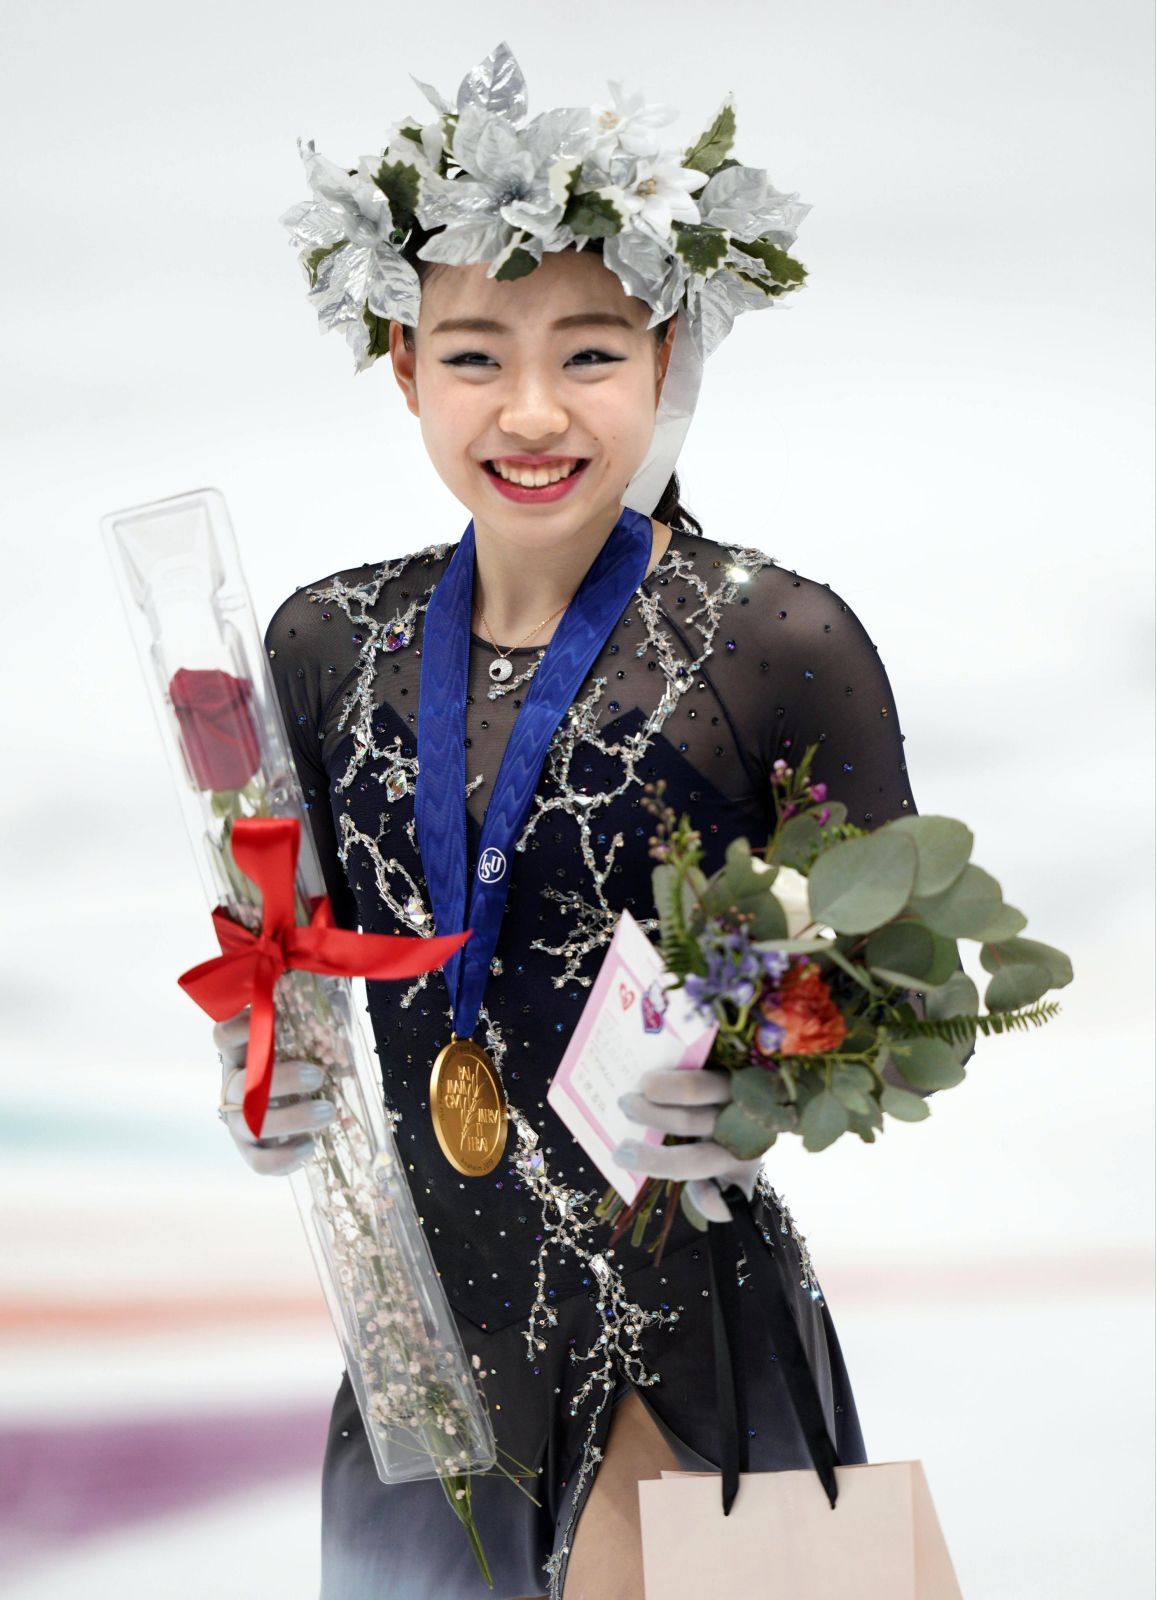 Rika Kihira, Shoma Uno Win ‘Four Continents’ Figure Skating Championships